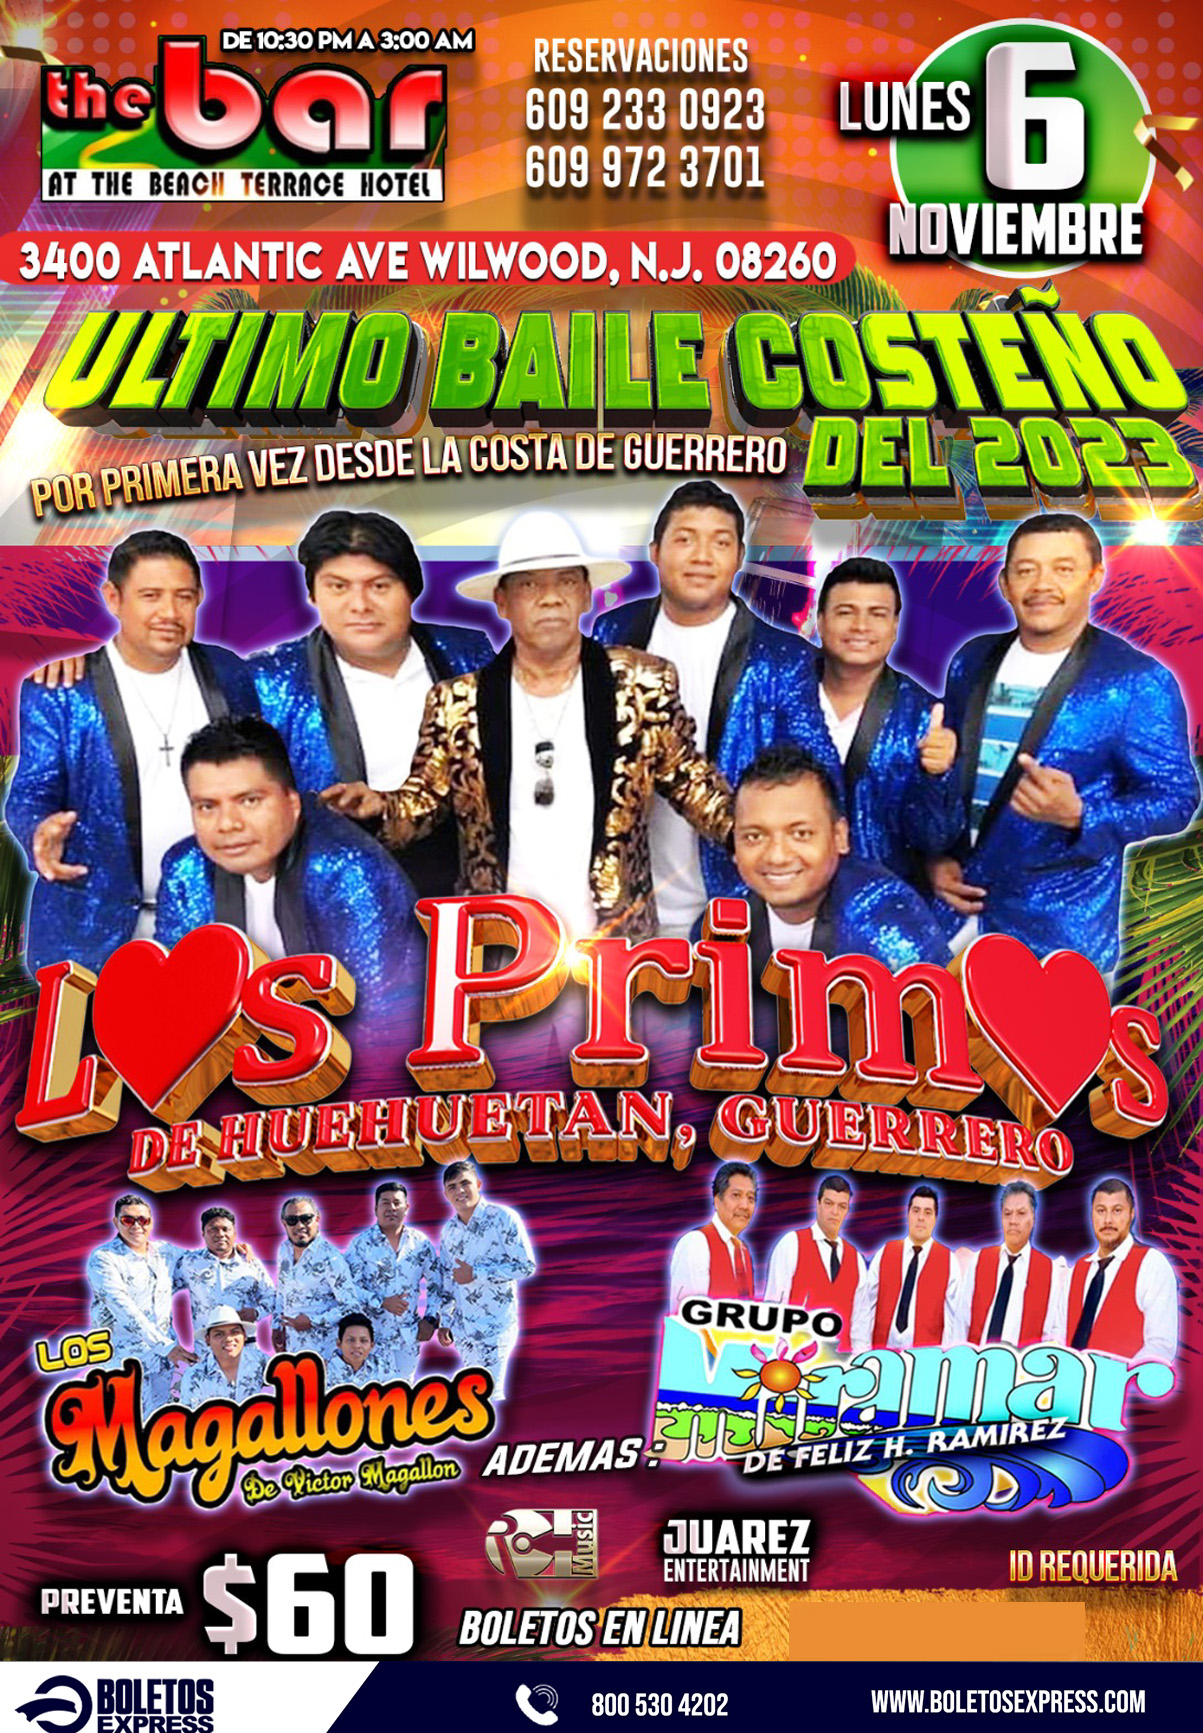 LOS PRIMOS DE HUEHUETAN - My Ticket VIP